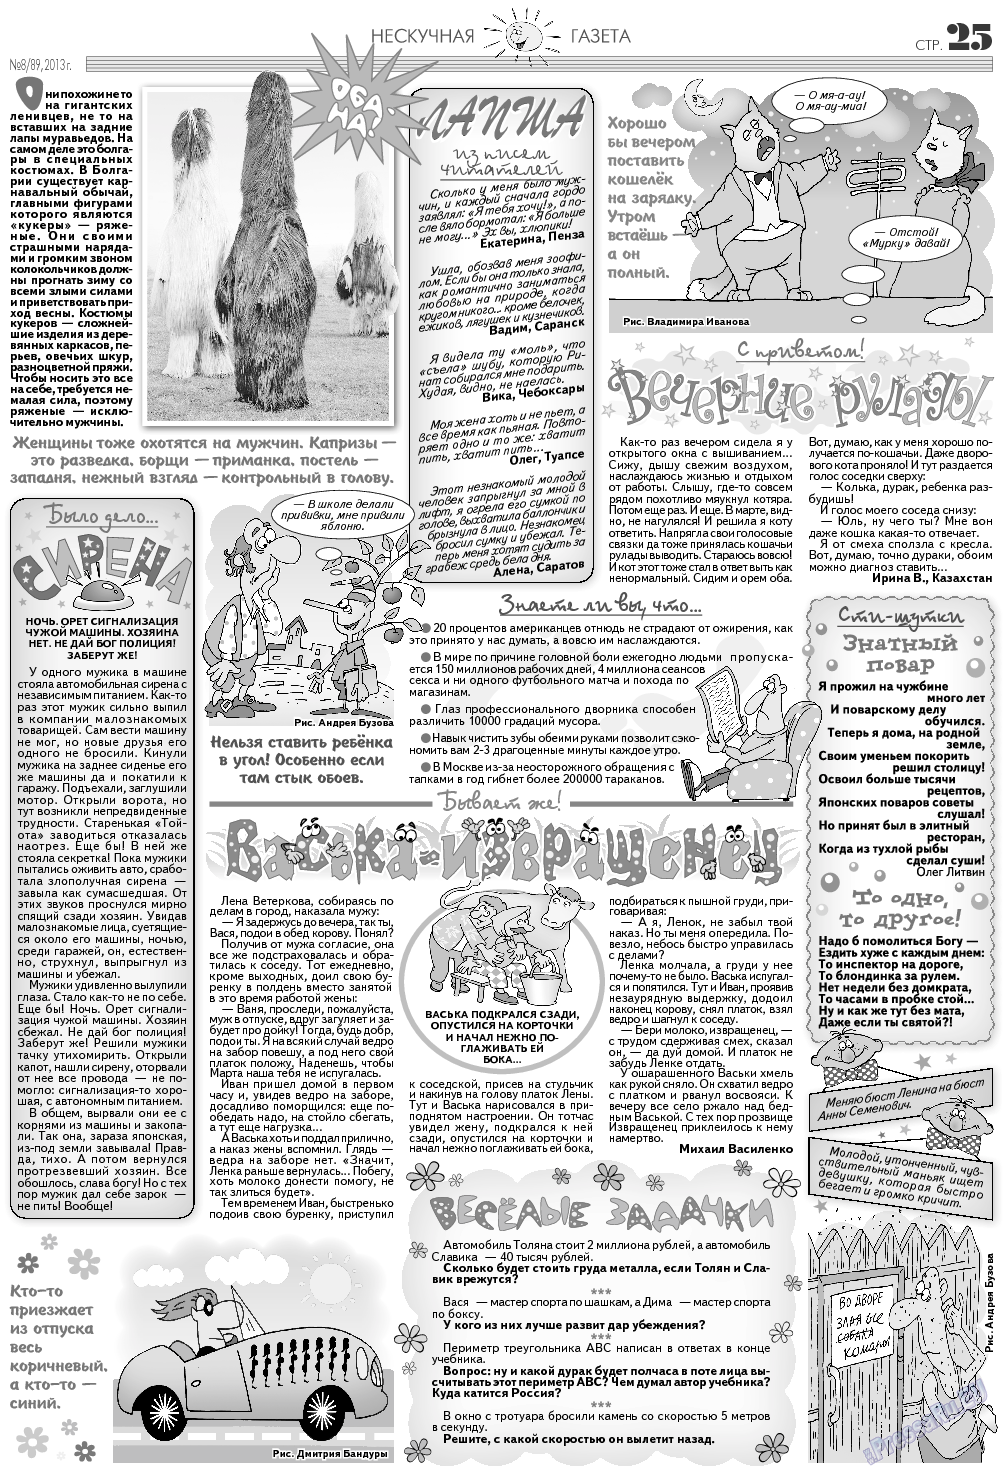 Нескучная газета (журнал). 2013 год, номер 8, стр. 25